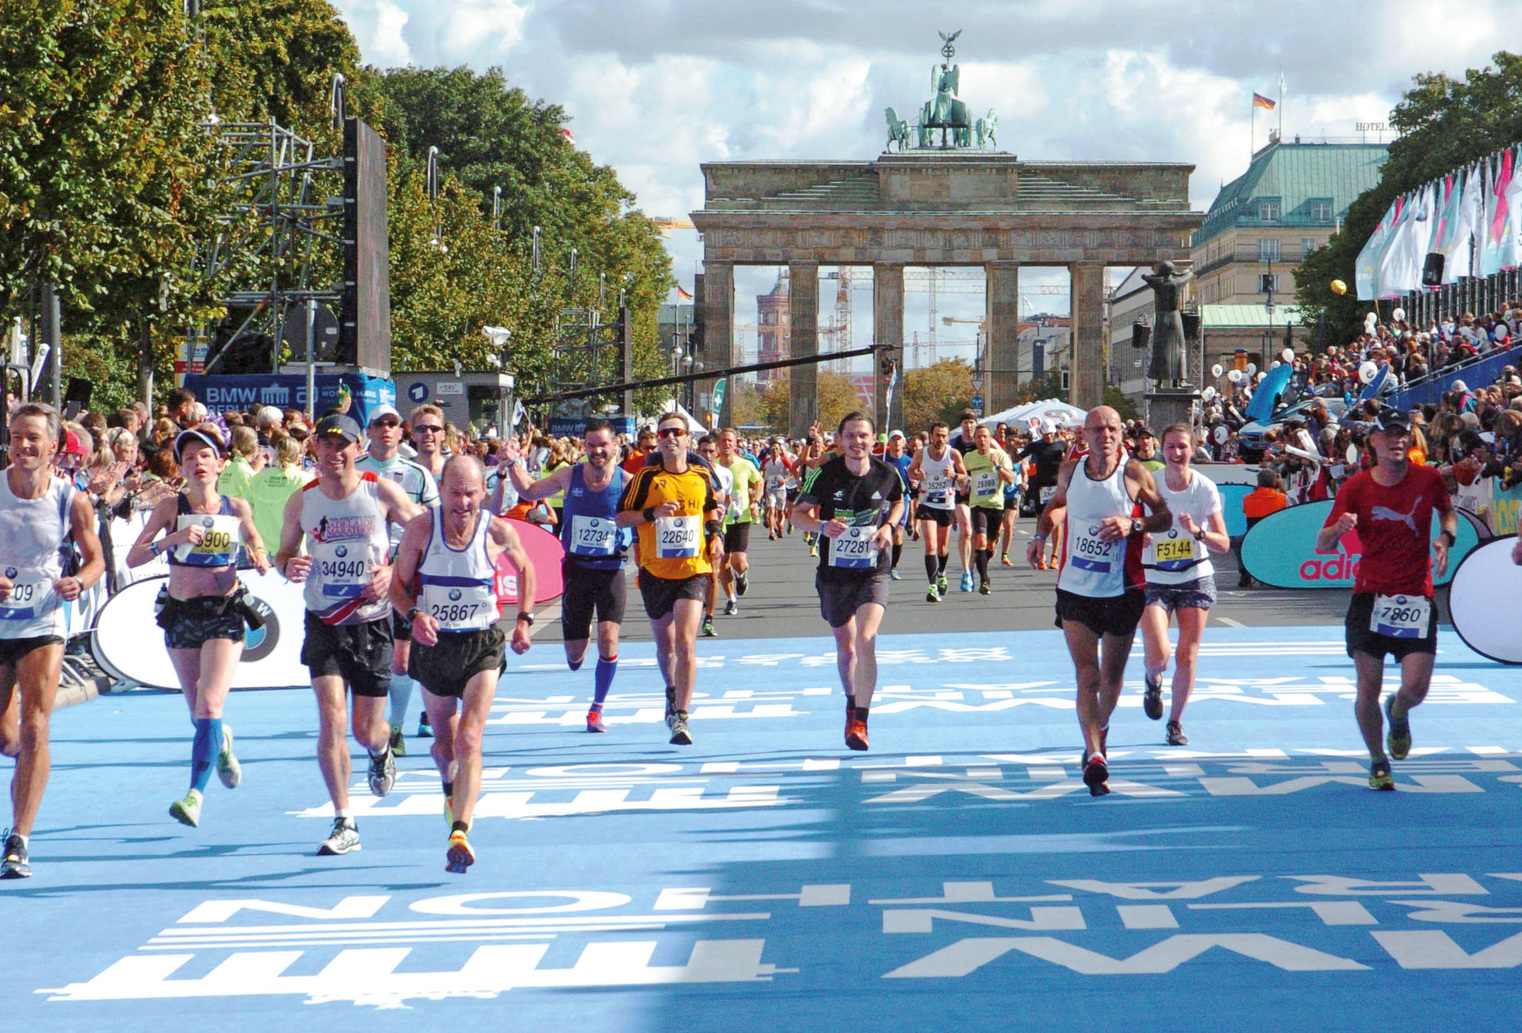 Neuer Weltrekord beim Berlin-Marathon? | schulz aktiv-Reiseblog